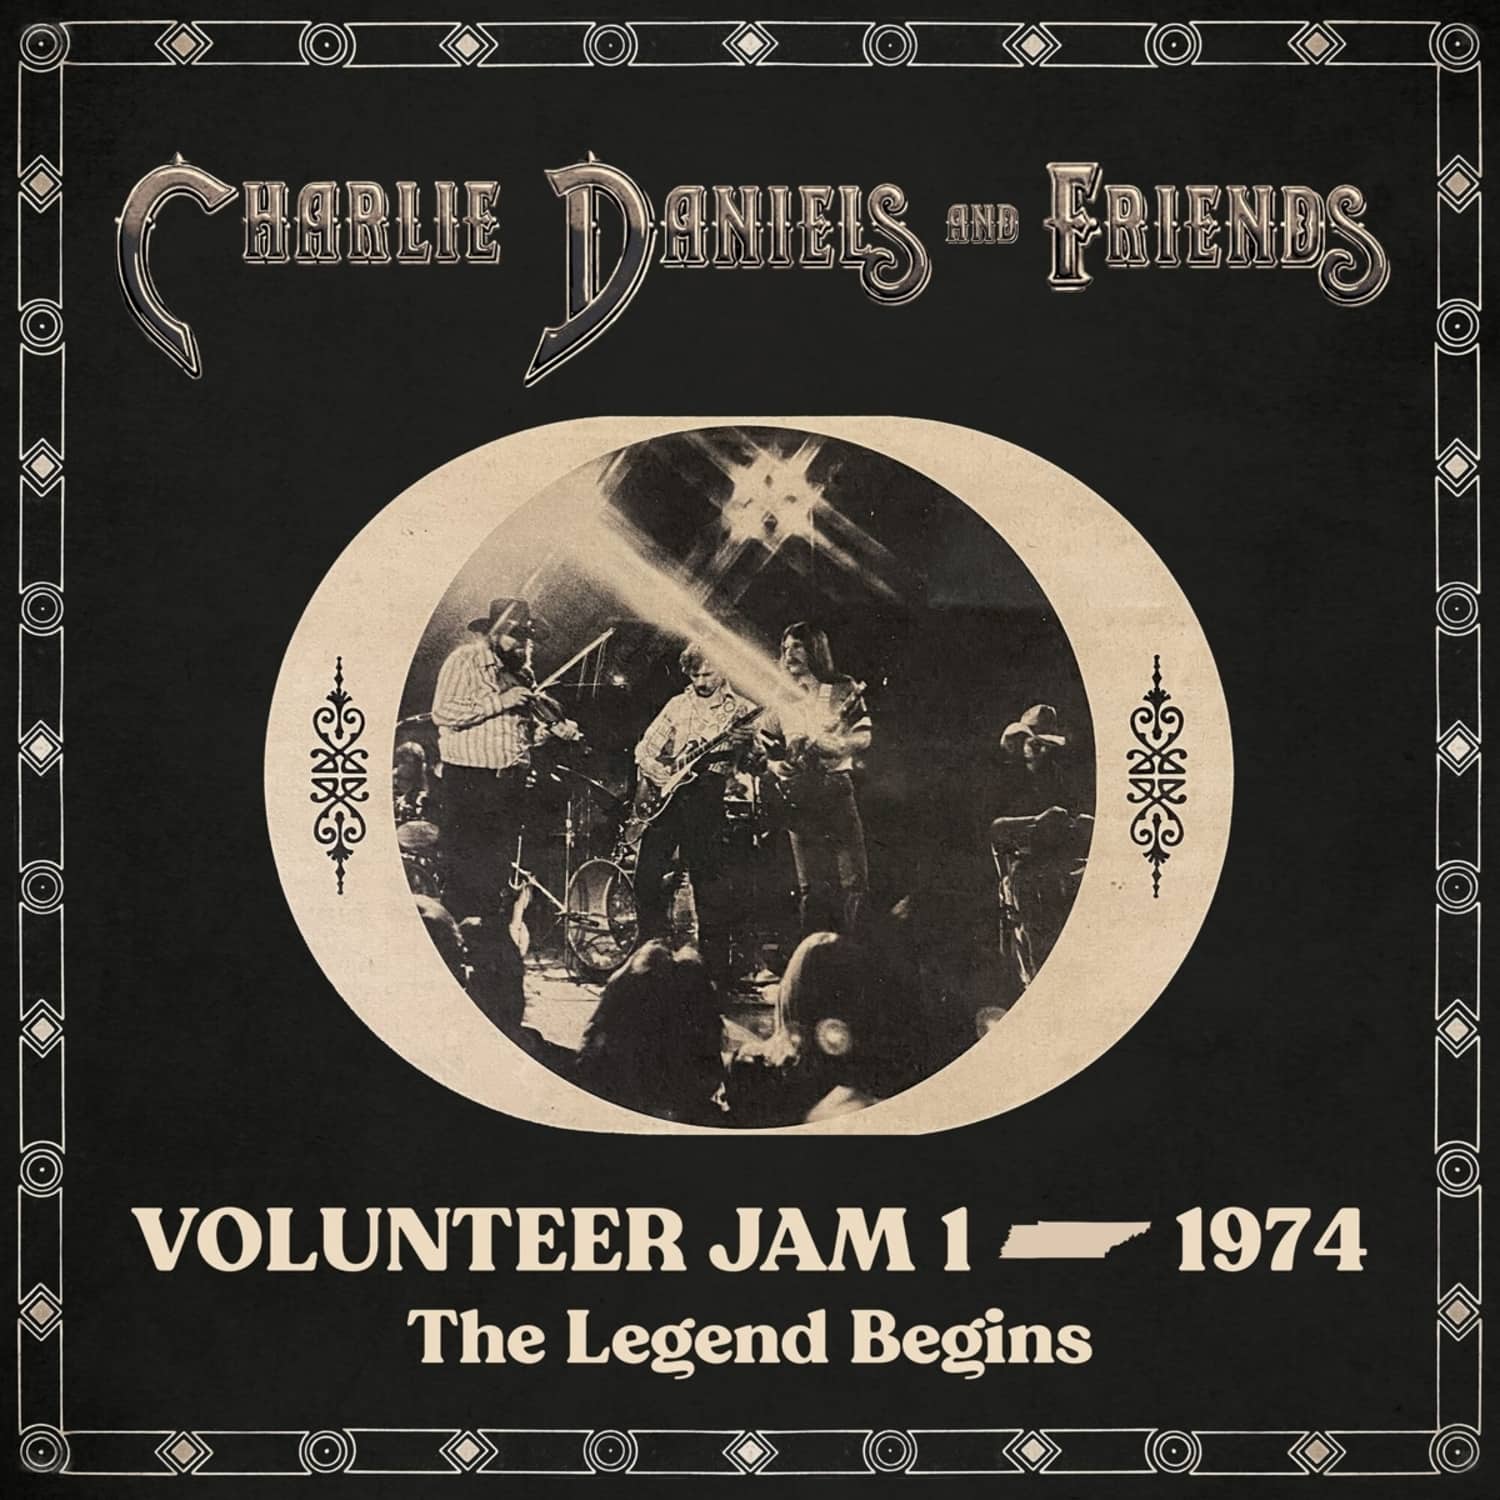 Charlie Daniels & Friends - VOLUNTEER JAM 1 1974: THE LEGEND BEGINS 